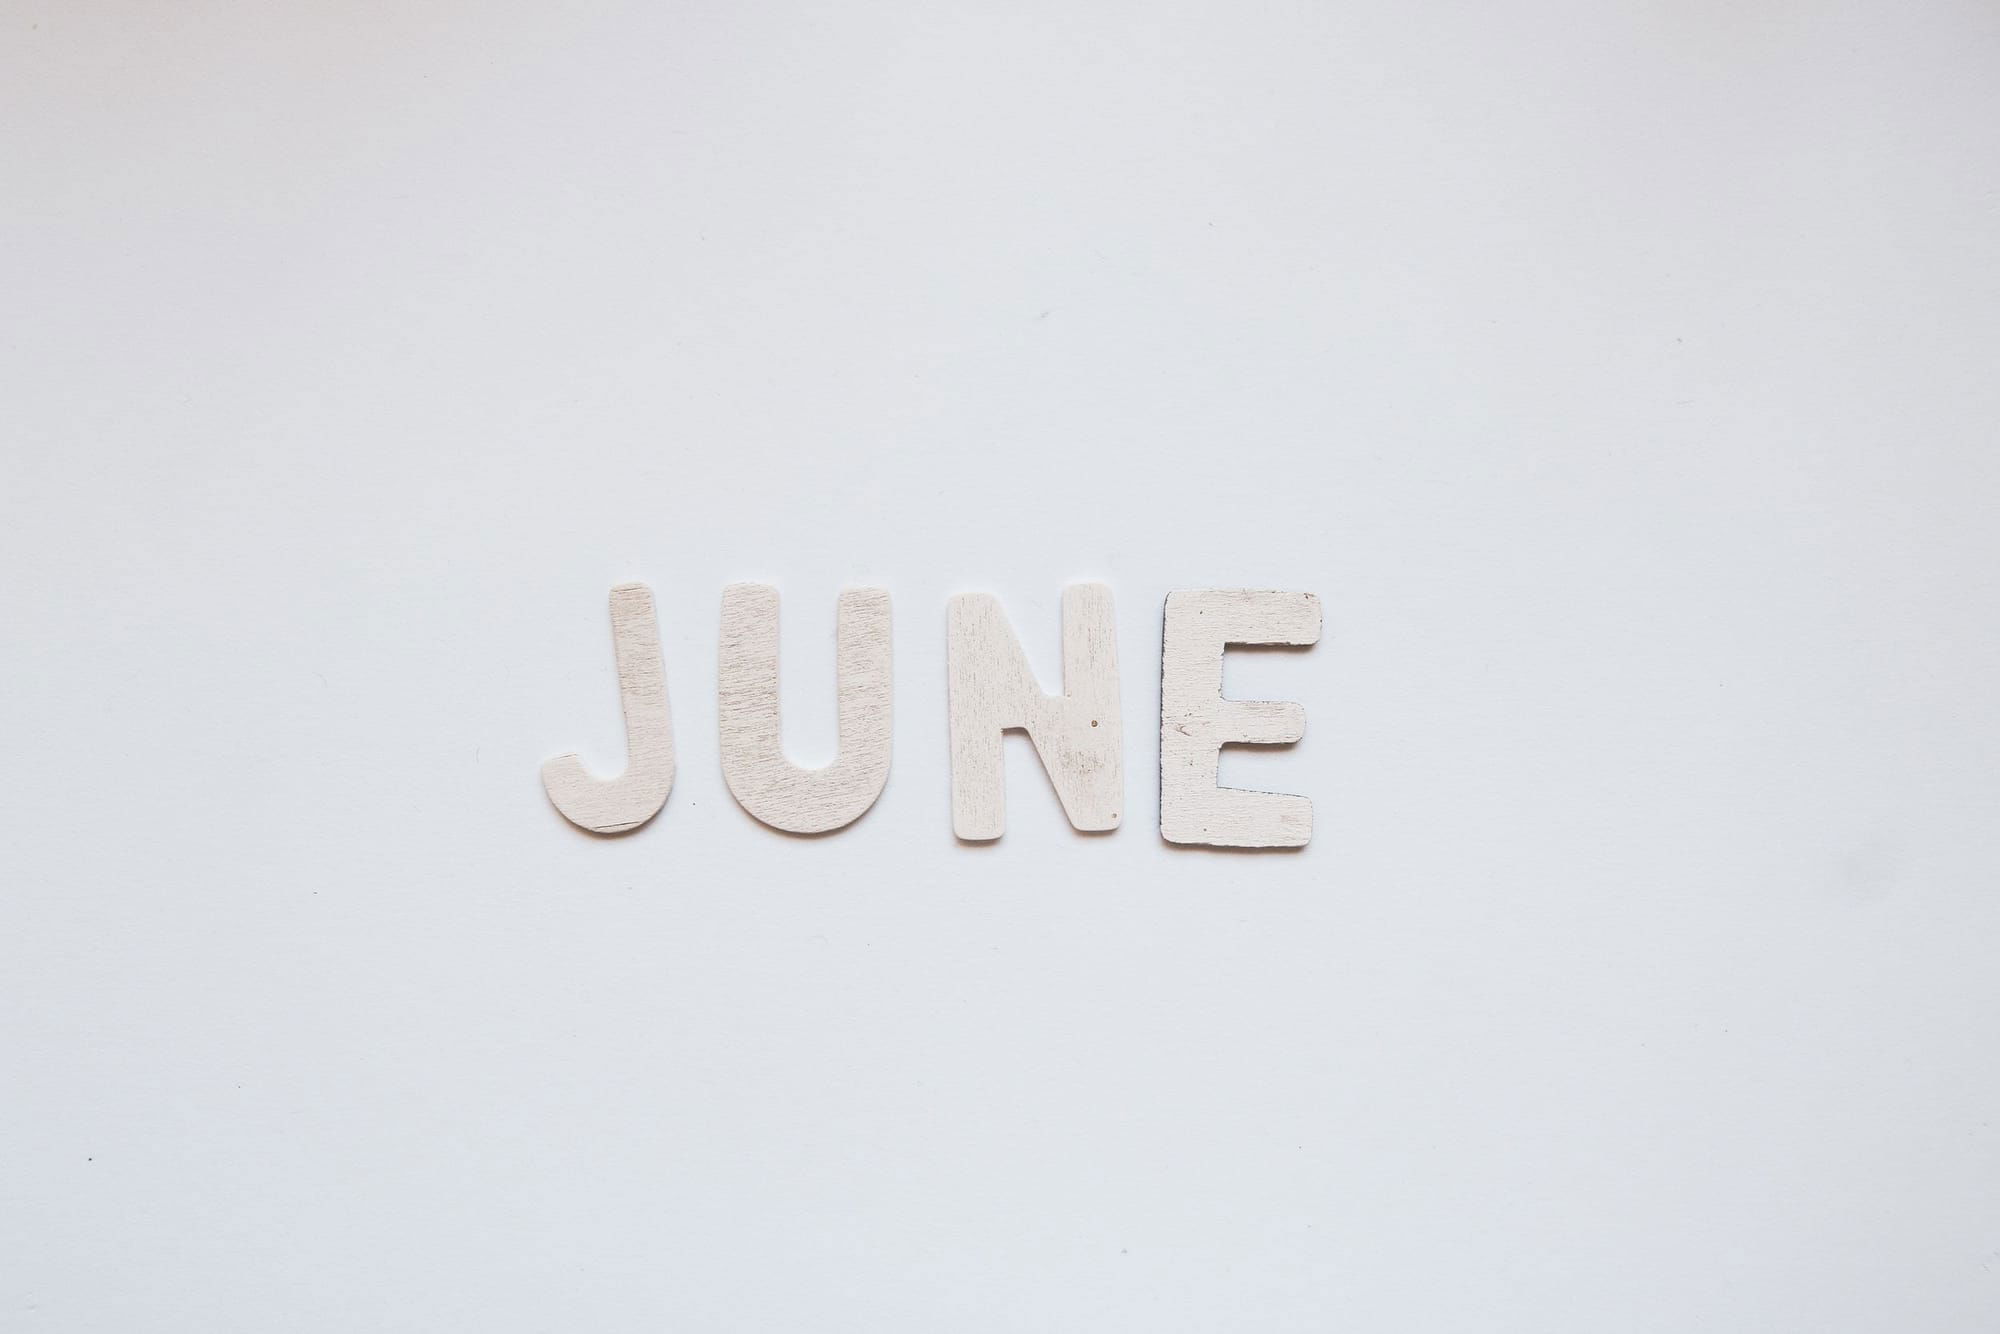 June Updates